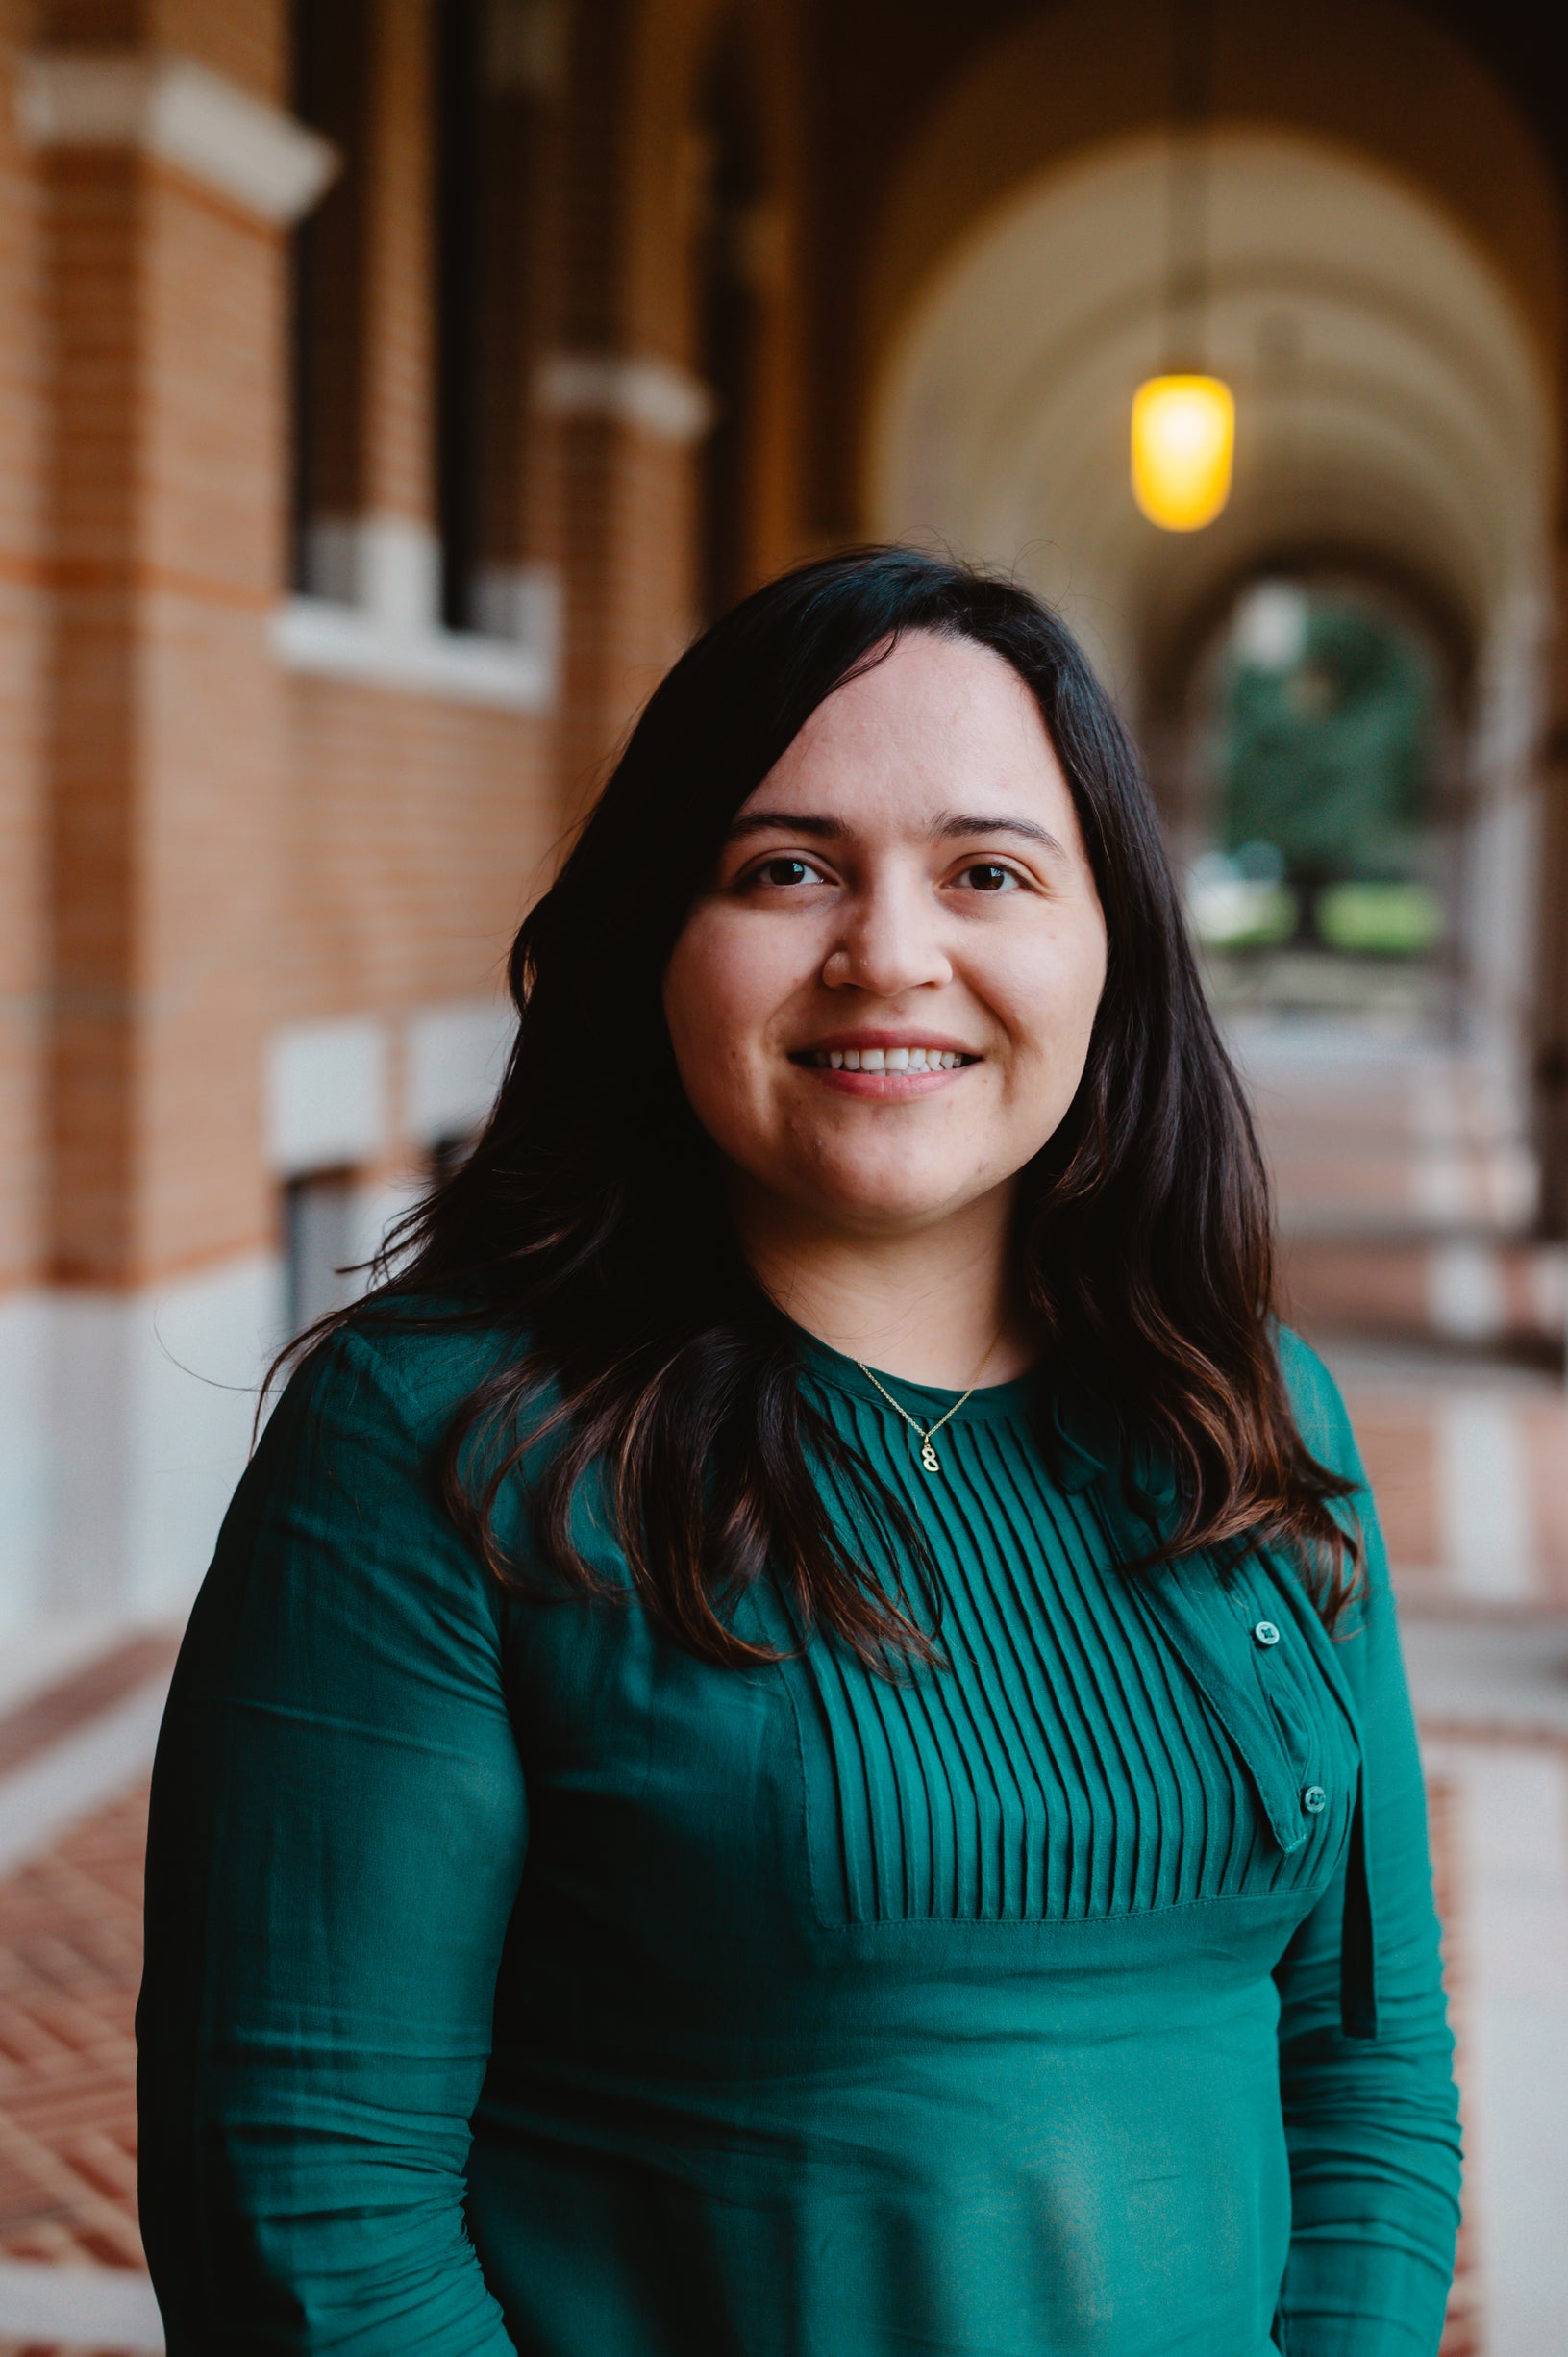 Alejandra Gonzalez Mejia, Fulbright Scholar at Rice University